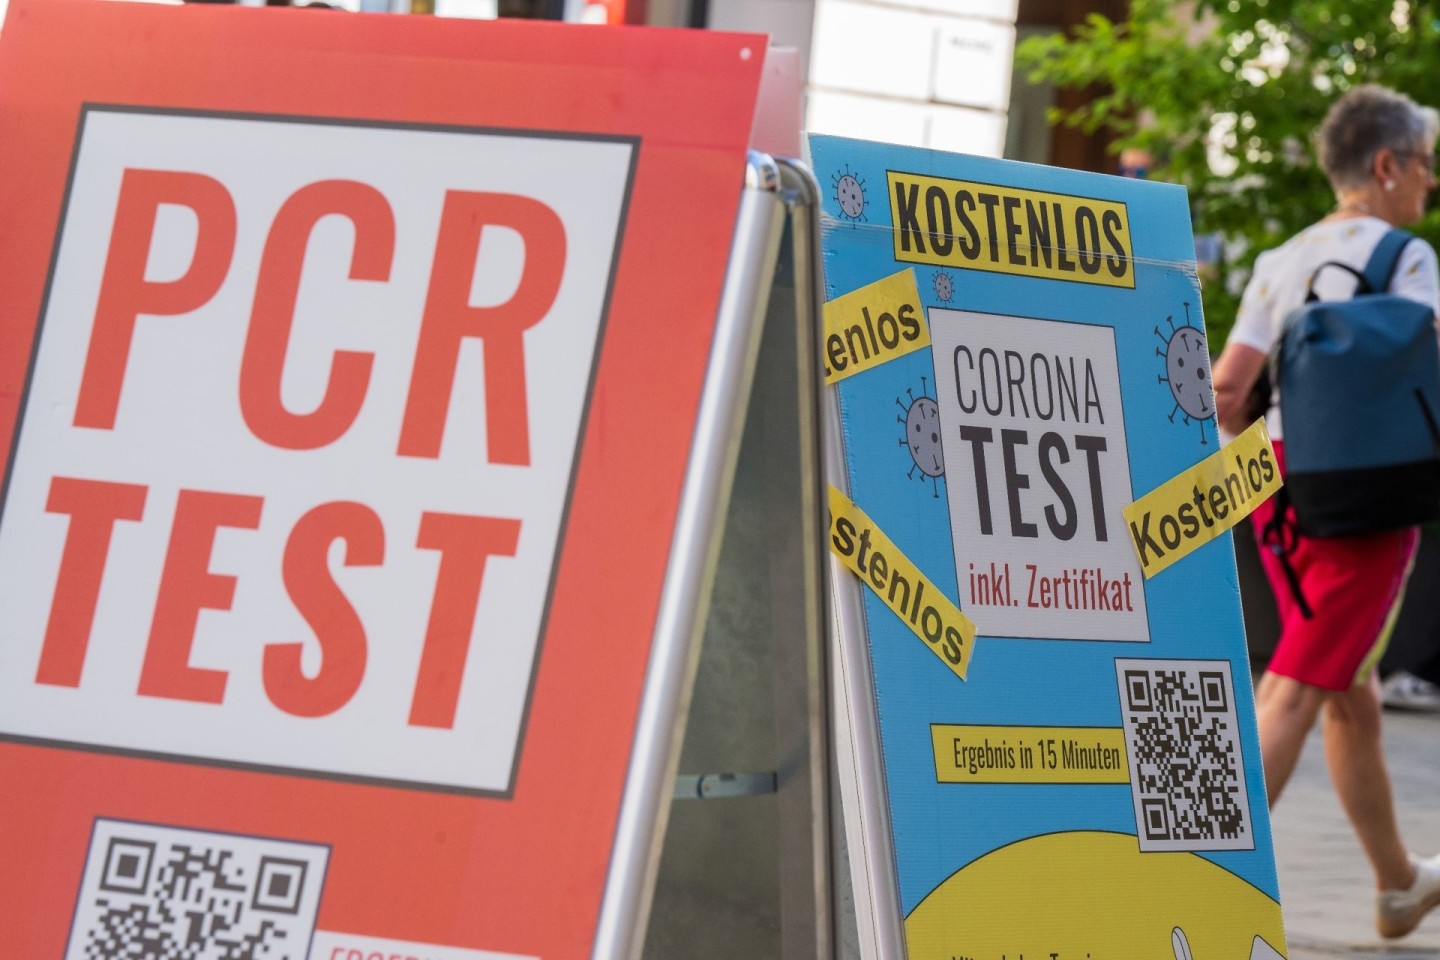 Schilder bewerben vor dem Eingang einer Apotheke in der Münchener Innenstadt Corona-Tests.